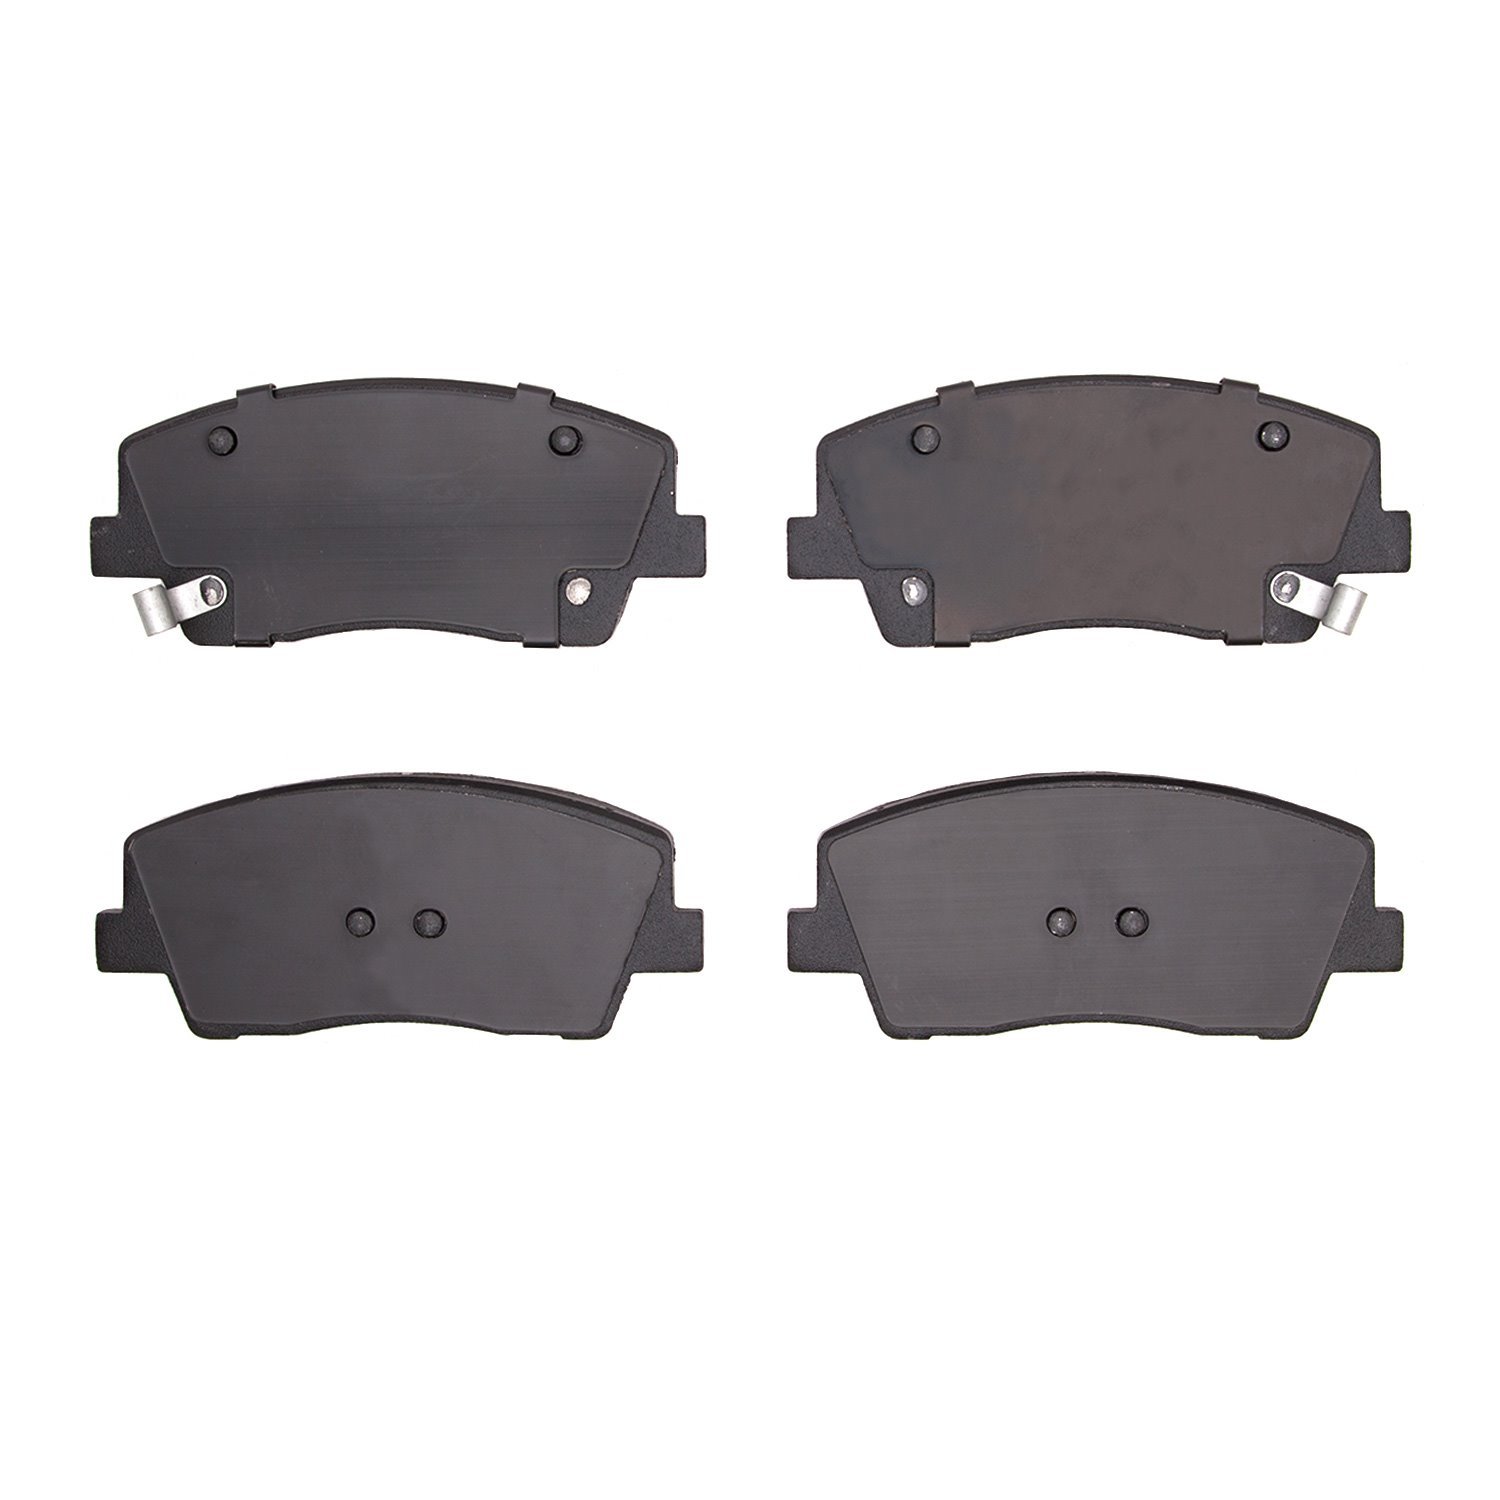 1310-2117-00 3000-Series Ceramic Brake Pads, Fits Select Kia/Hyundai/Genesis, Position: Front